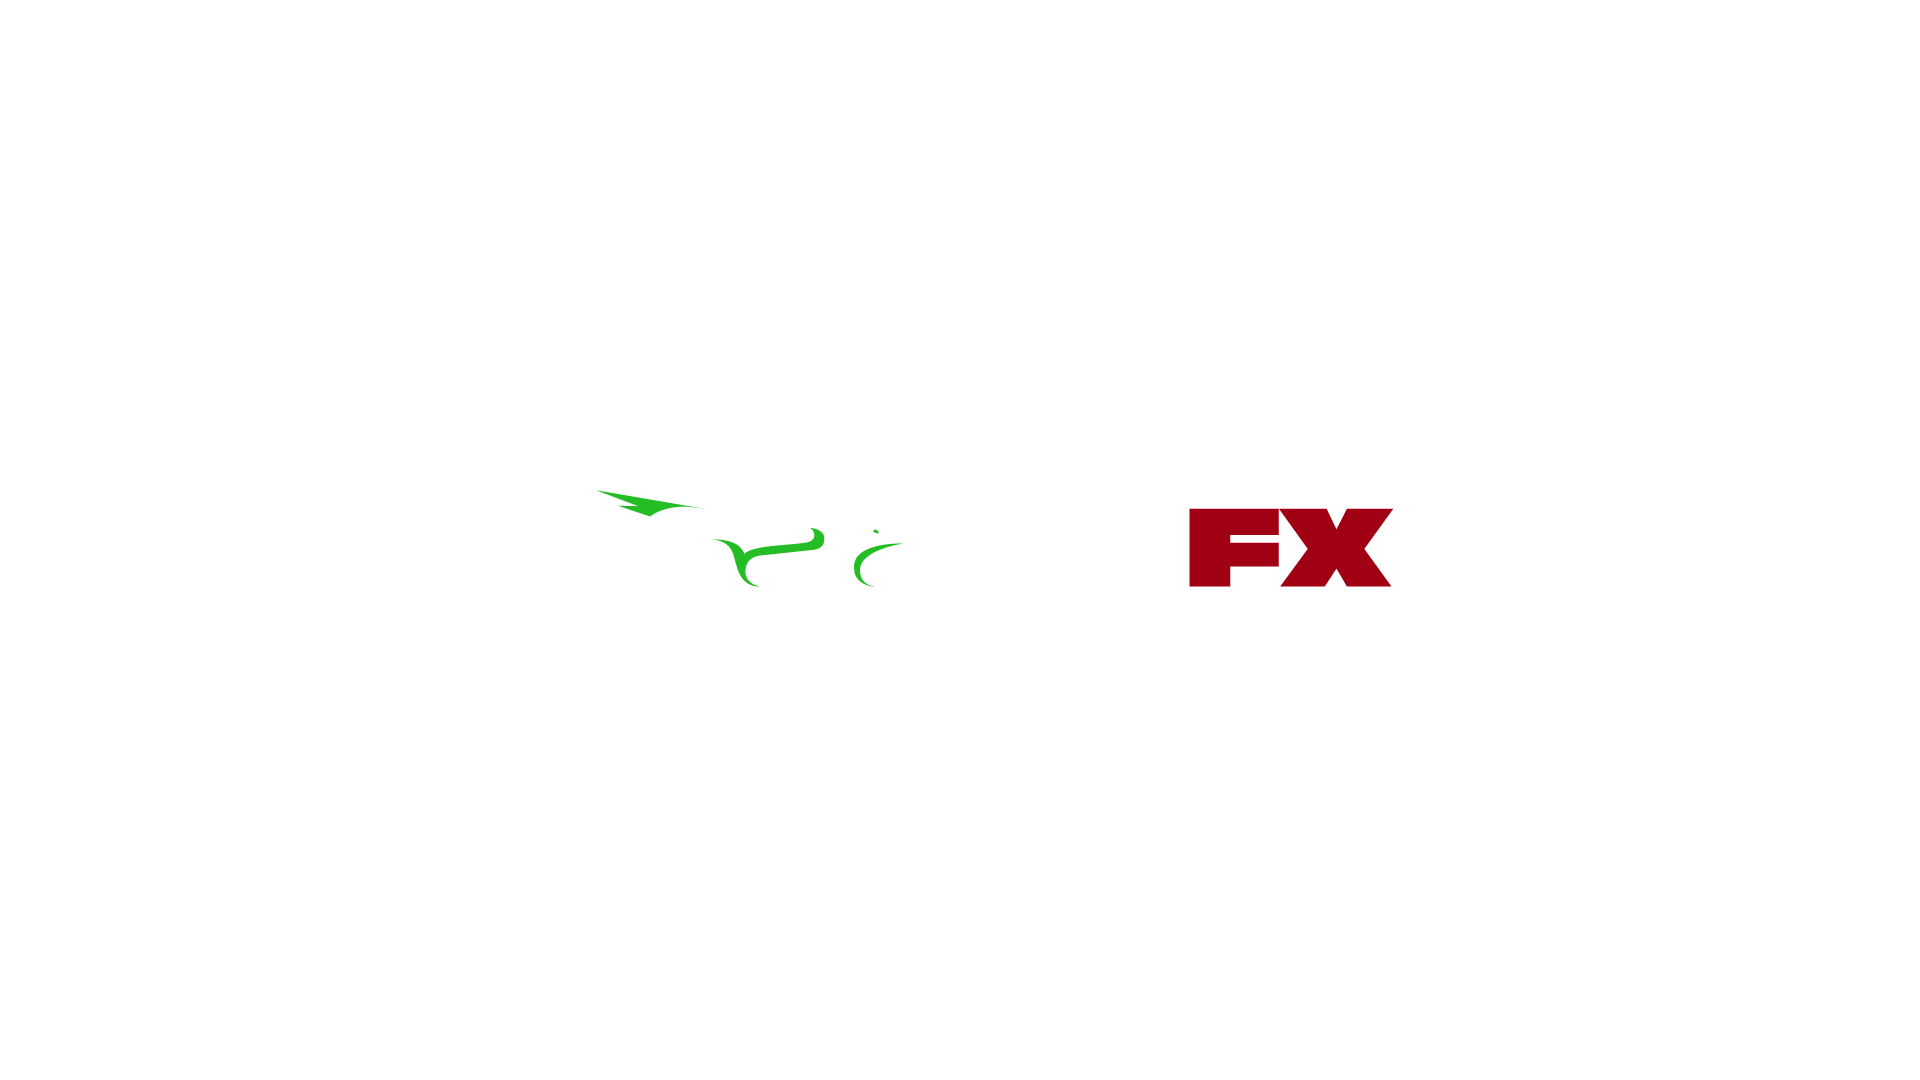 OspreyFX ECN Broker Review